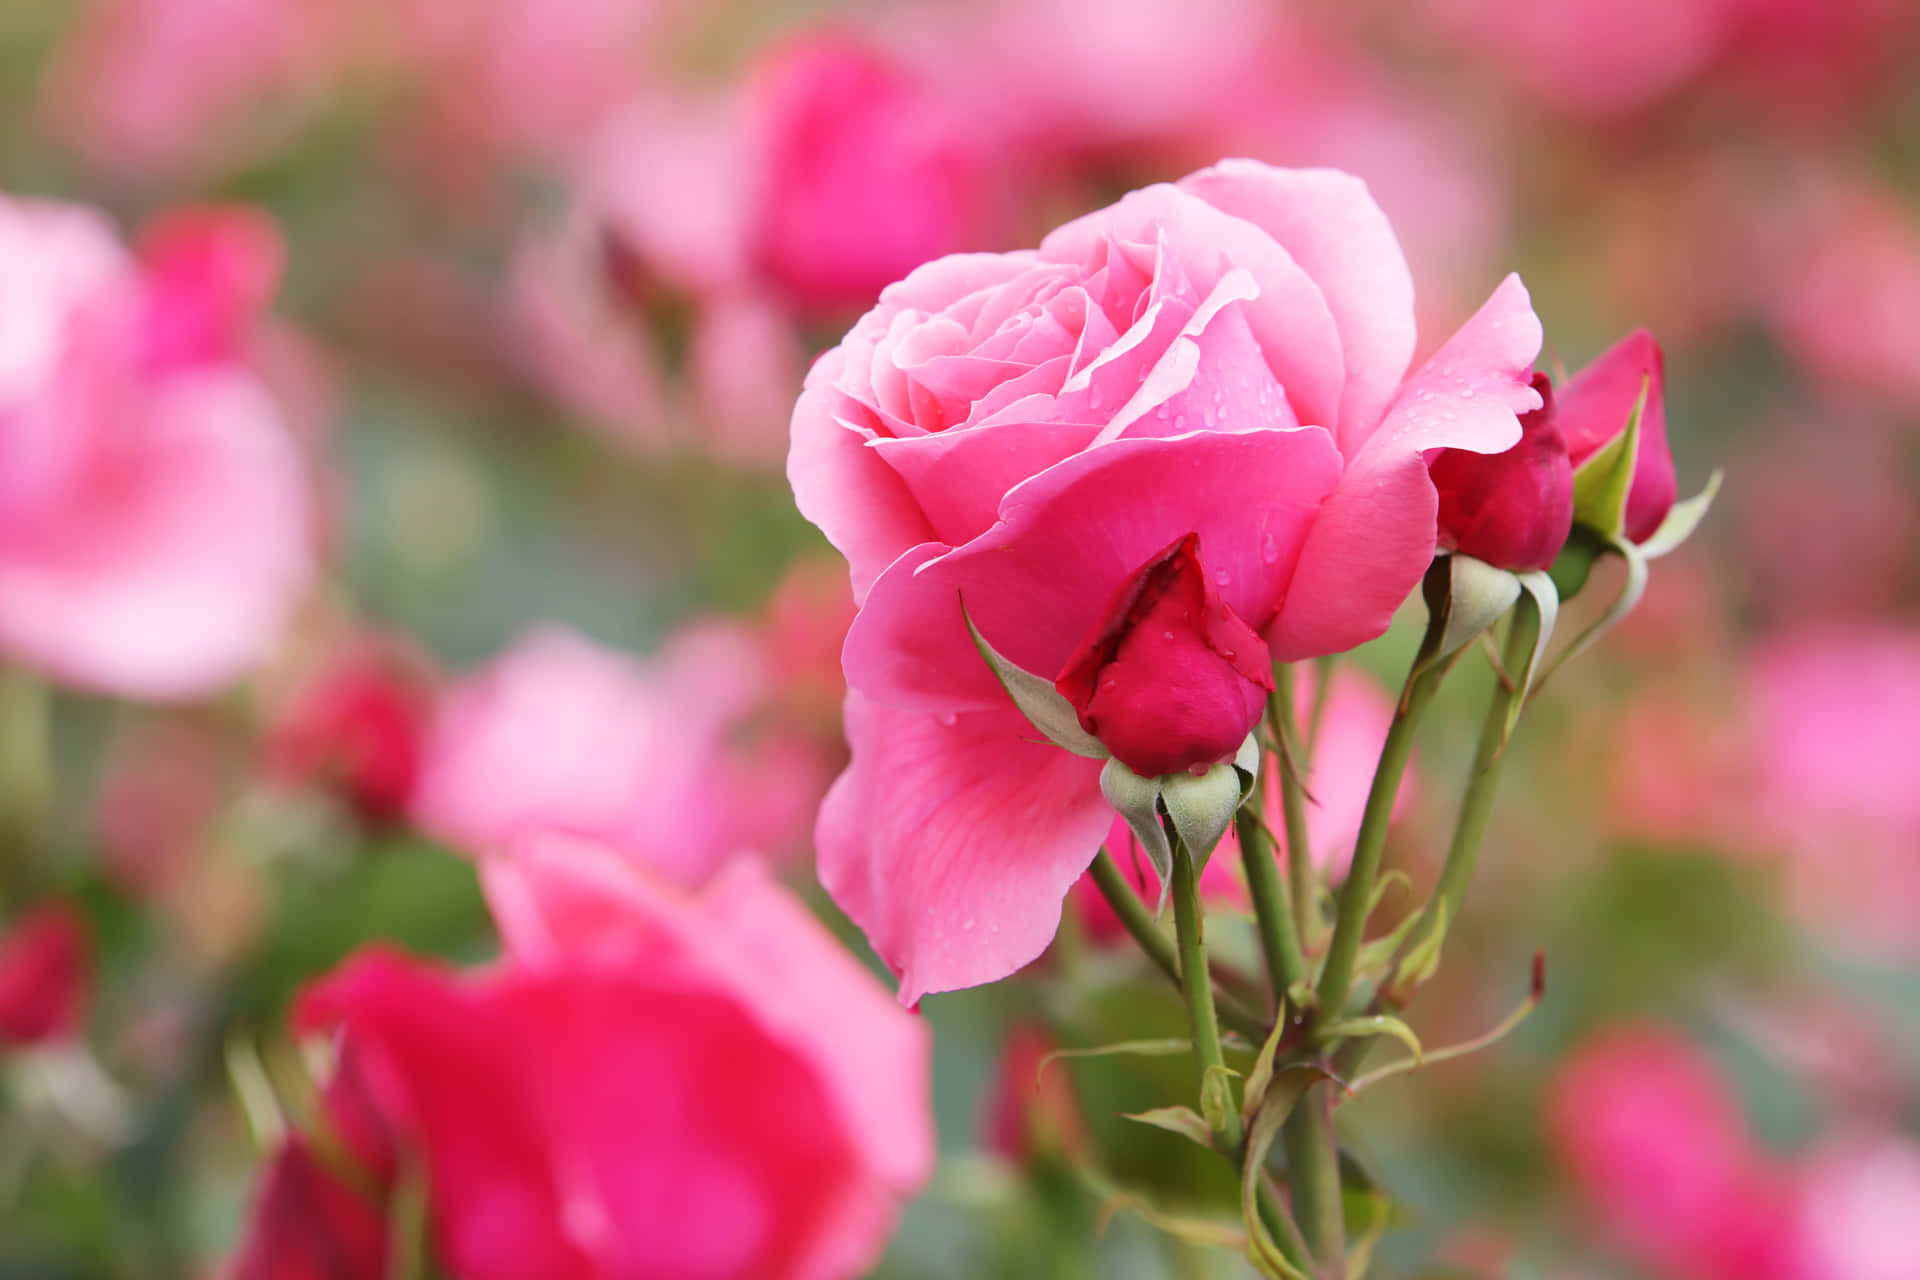 Oamor Está No Ar - Um Buquê De Rosas Vermelhas Para O Dia Dos Namorados. Papel de Parede